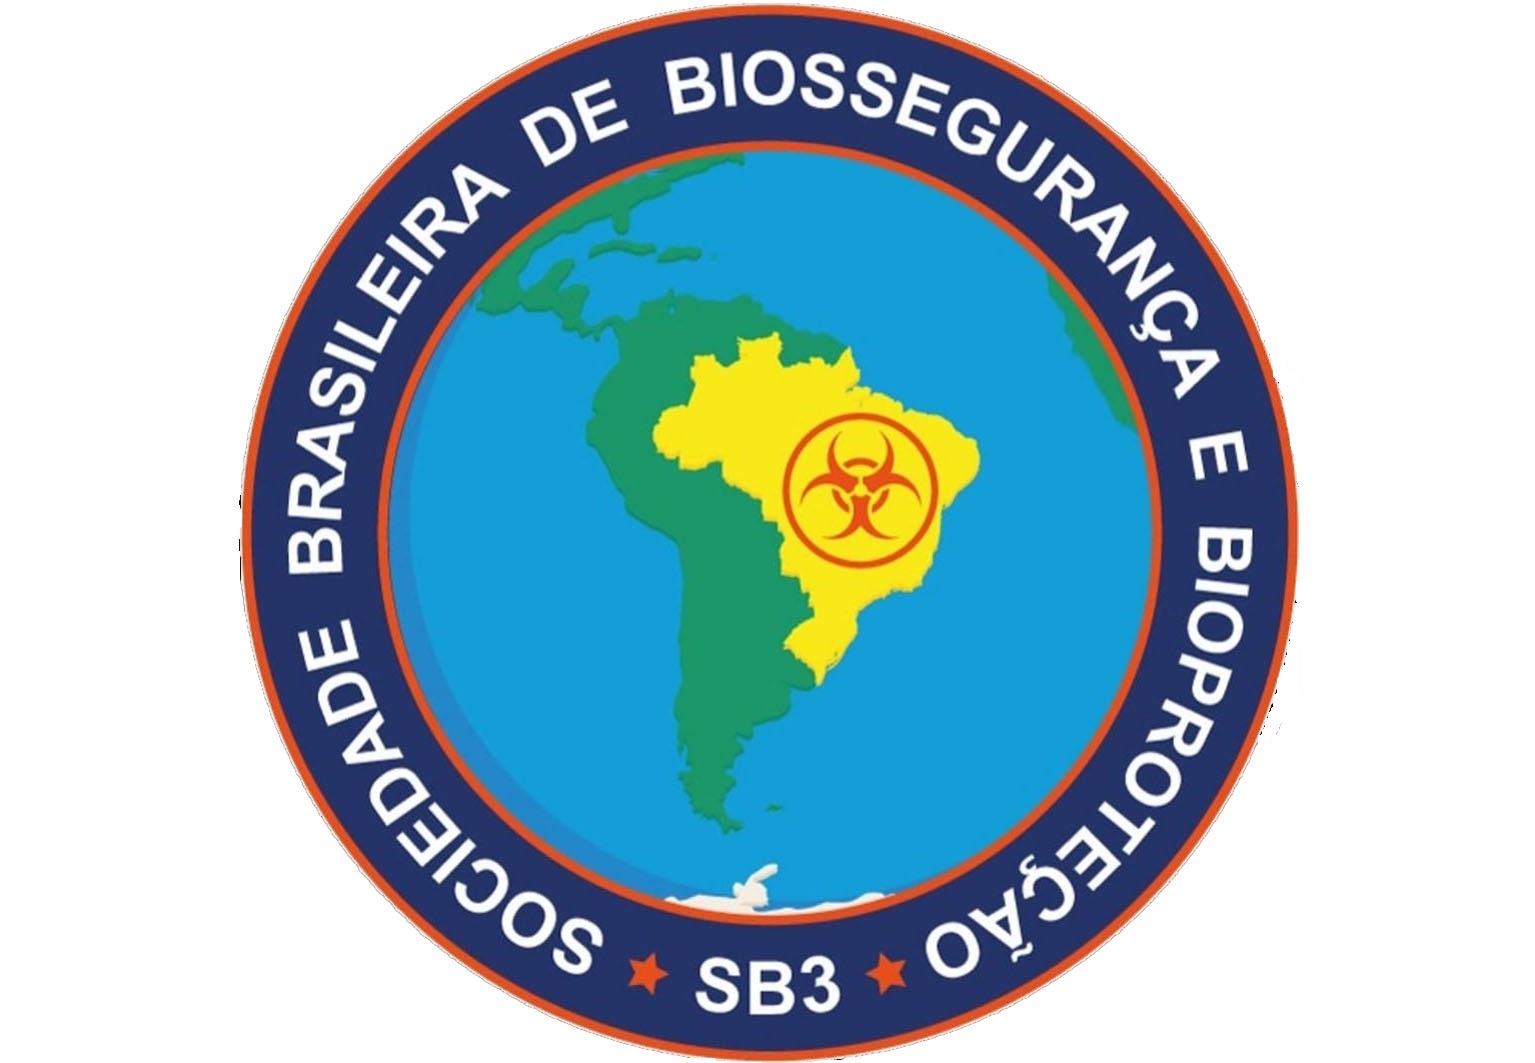 Brazilian Biosafety & Biosecurity Society (SB3) - Sociedade Brasileira de Biossegurança e Bioproteção